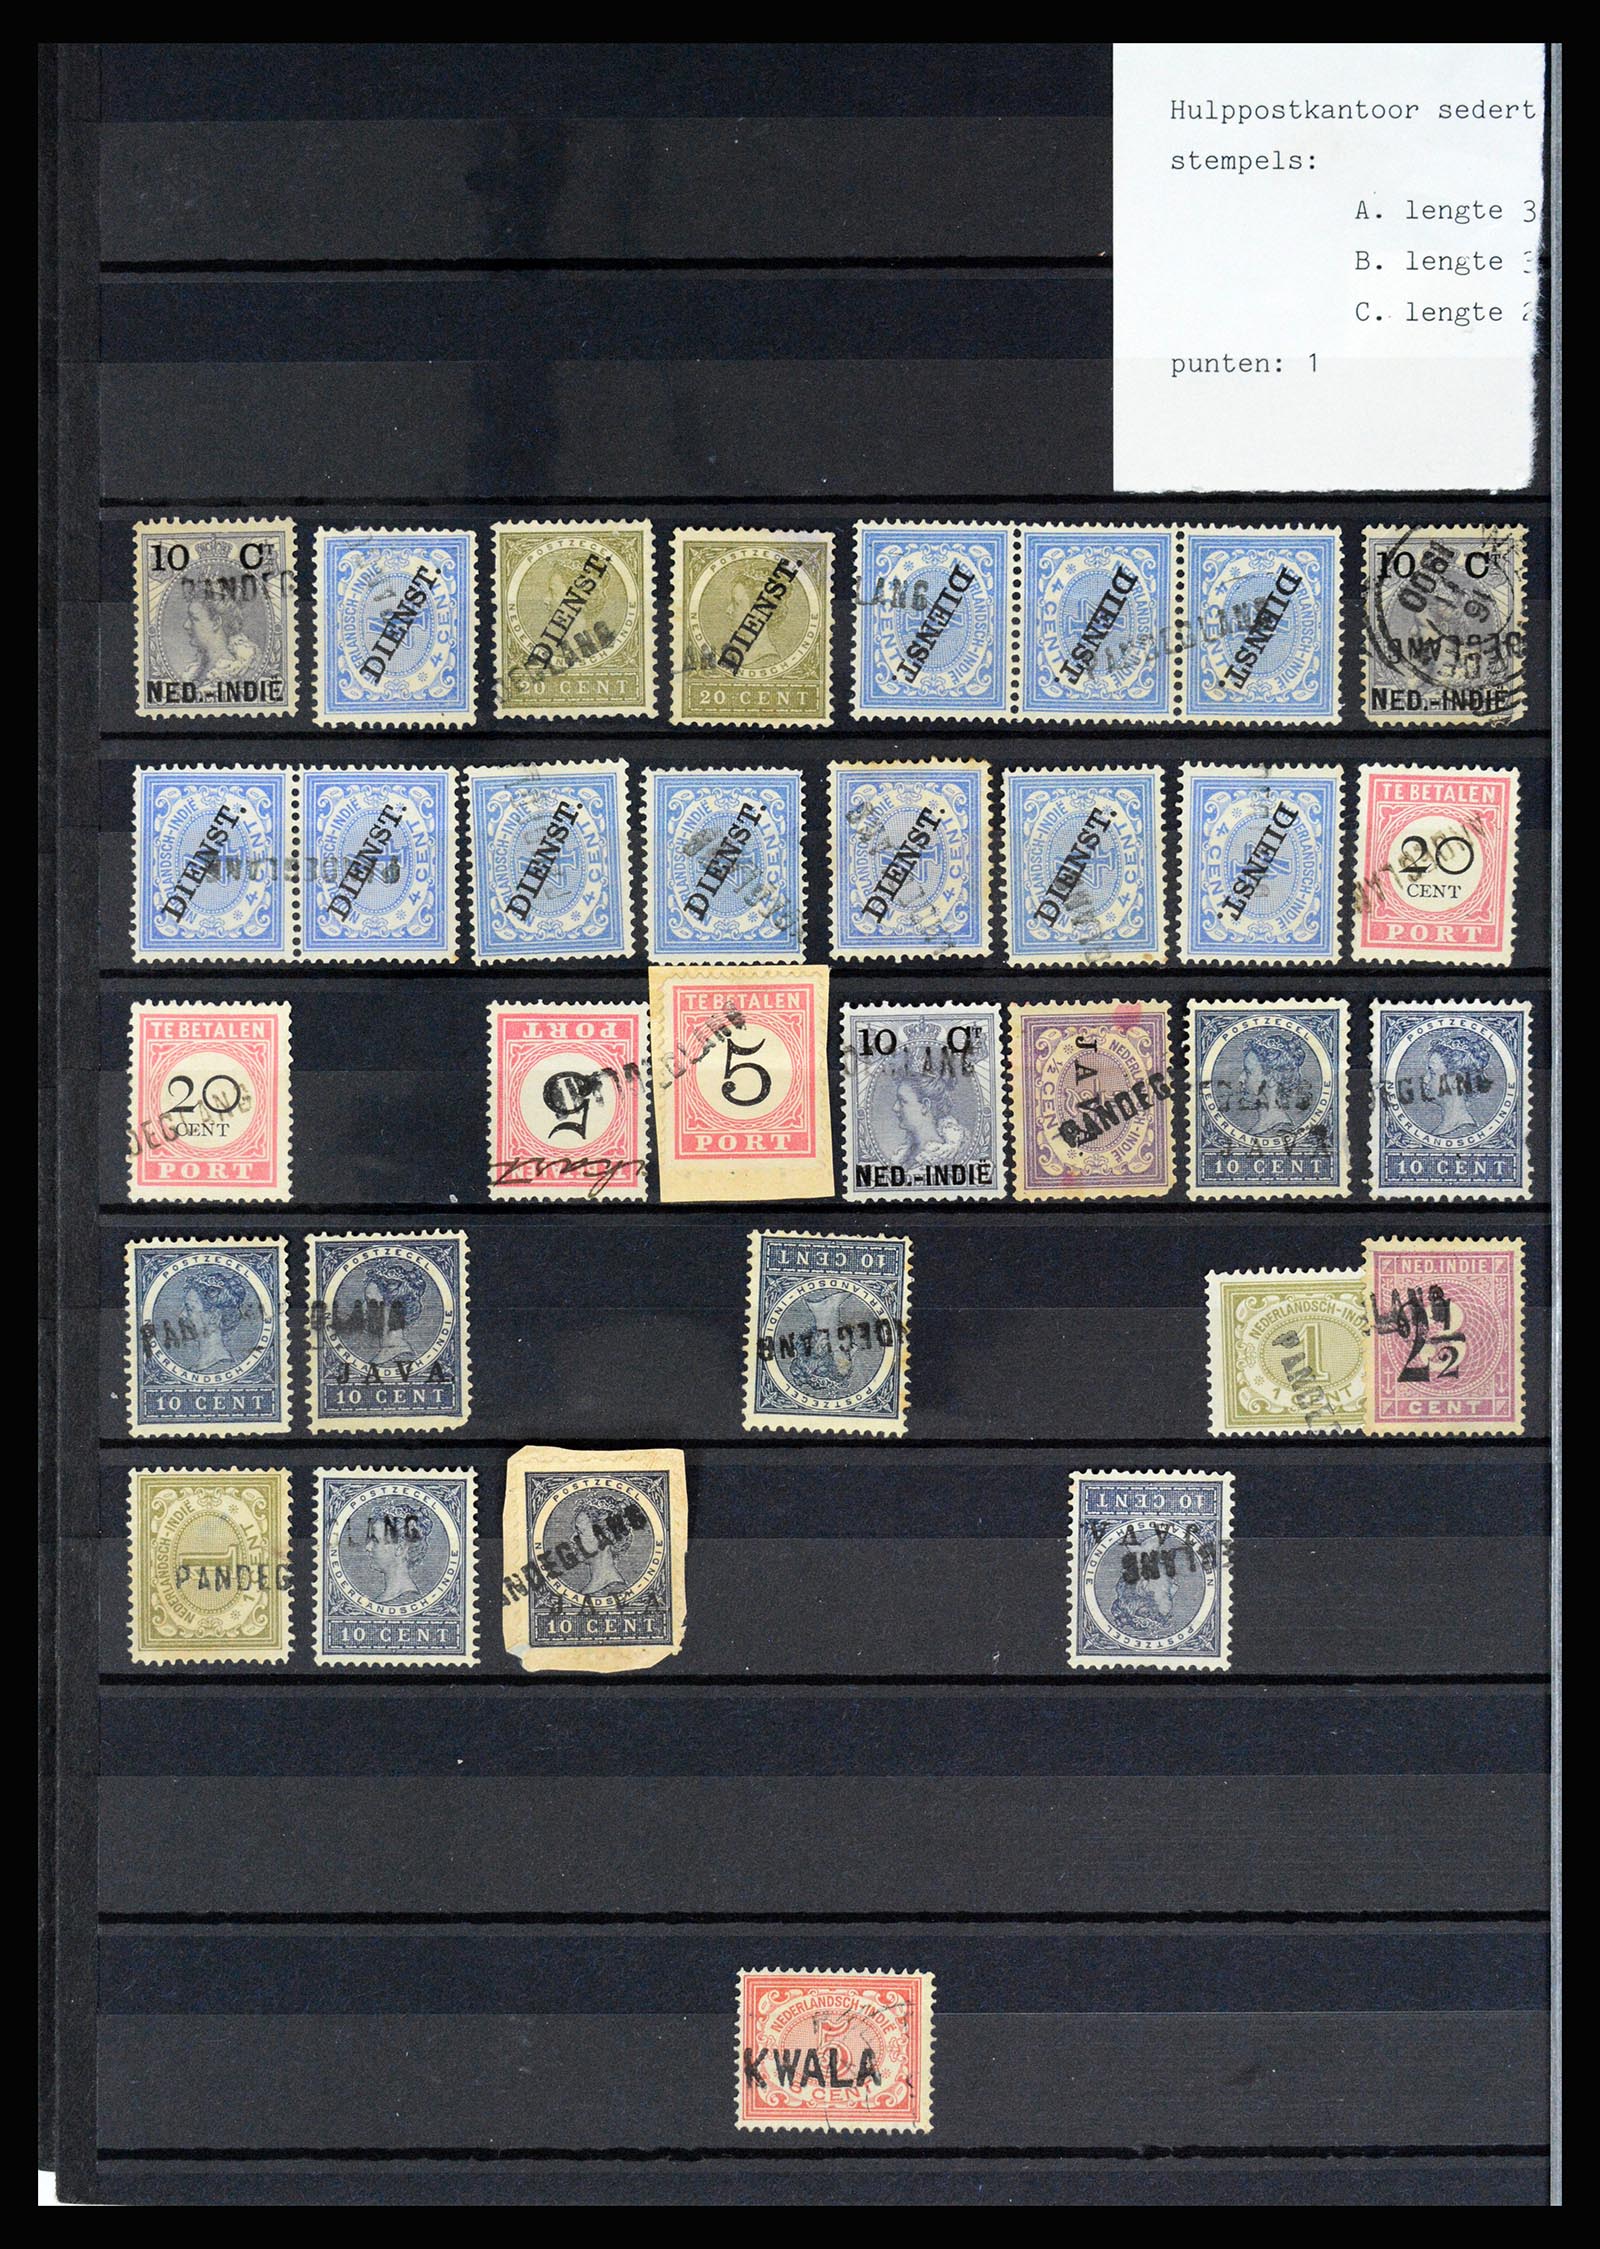 36512 050 - Stamp collection 36512 Nederlands Indië stempels 1872-1930.